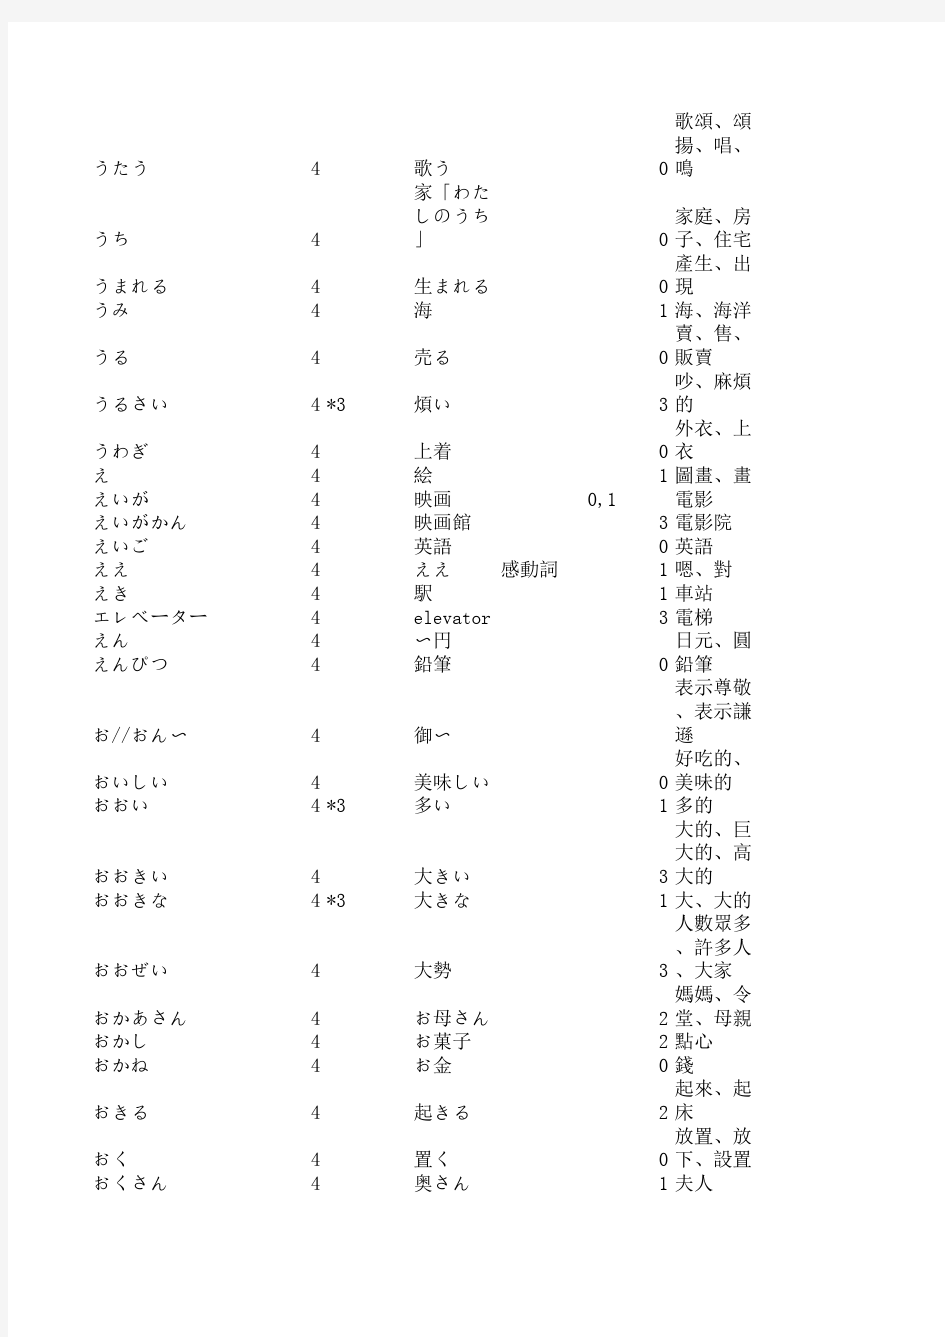 日本语能力测试1-4级词汇表